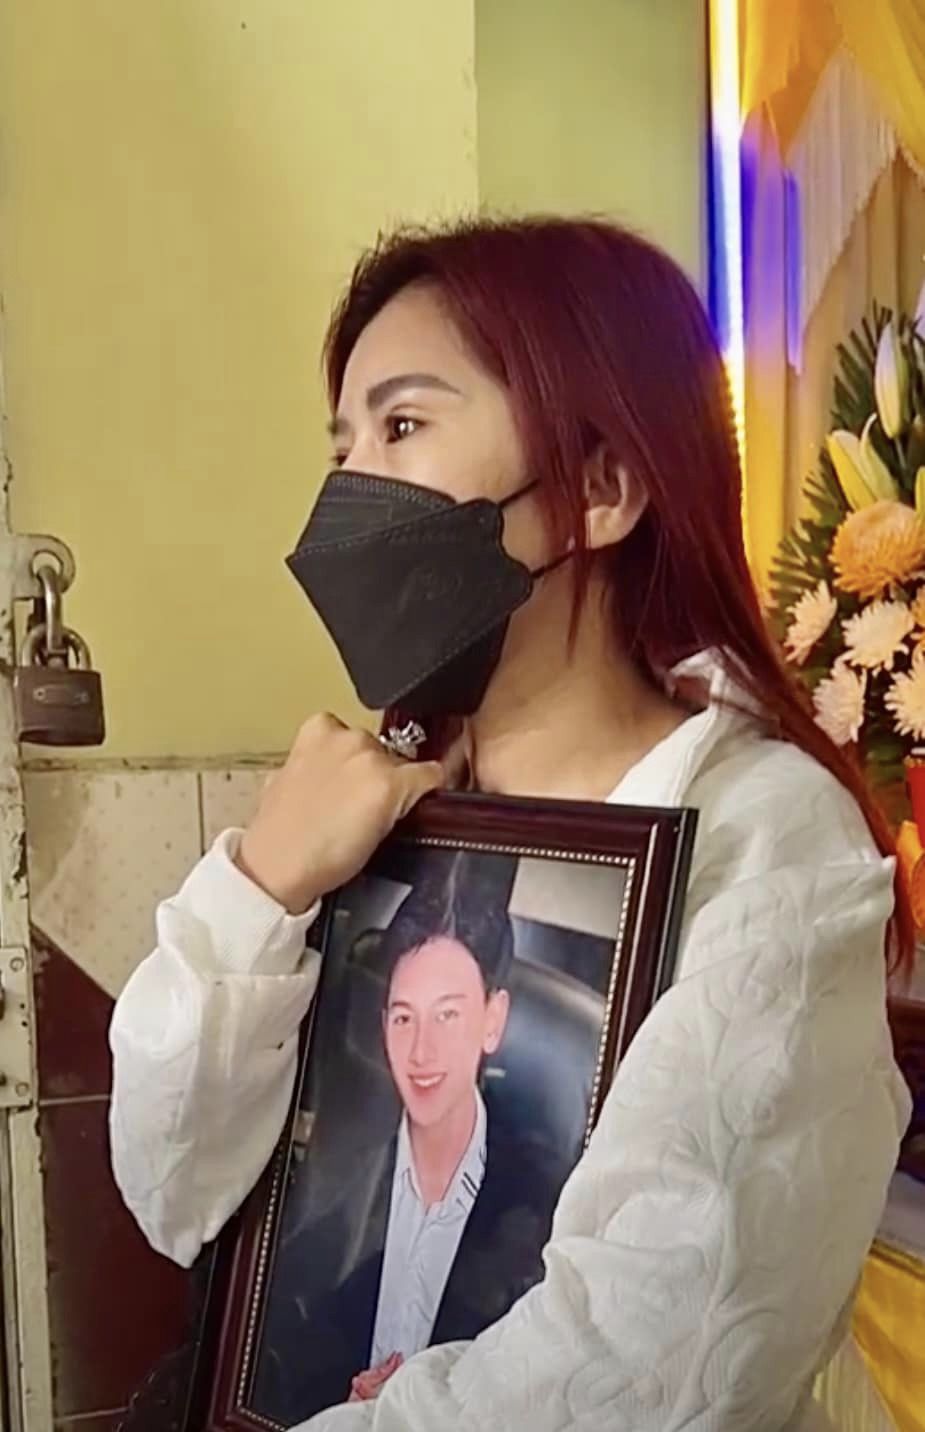 Tang lễ nhạc sĩ trẻ qua đời ở tuổi 20: Mẹ ruột khóc nghẹn, nghệ sĩ Bình Tinh xót xa cầm di ảnh - ảnh 3